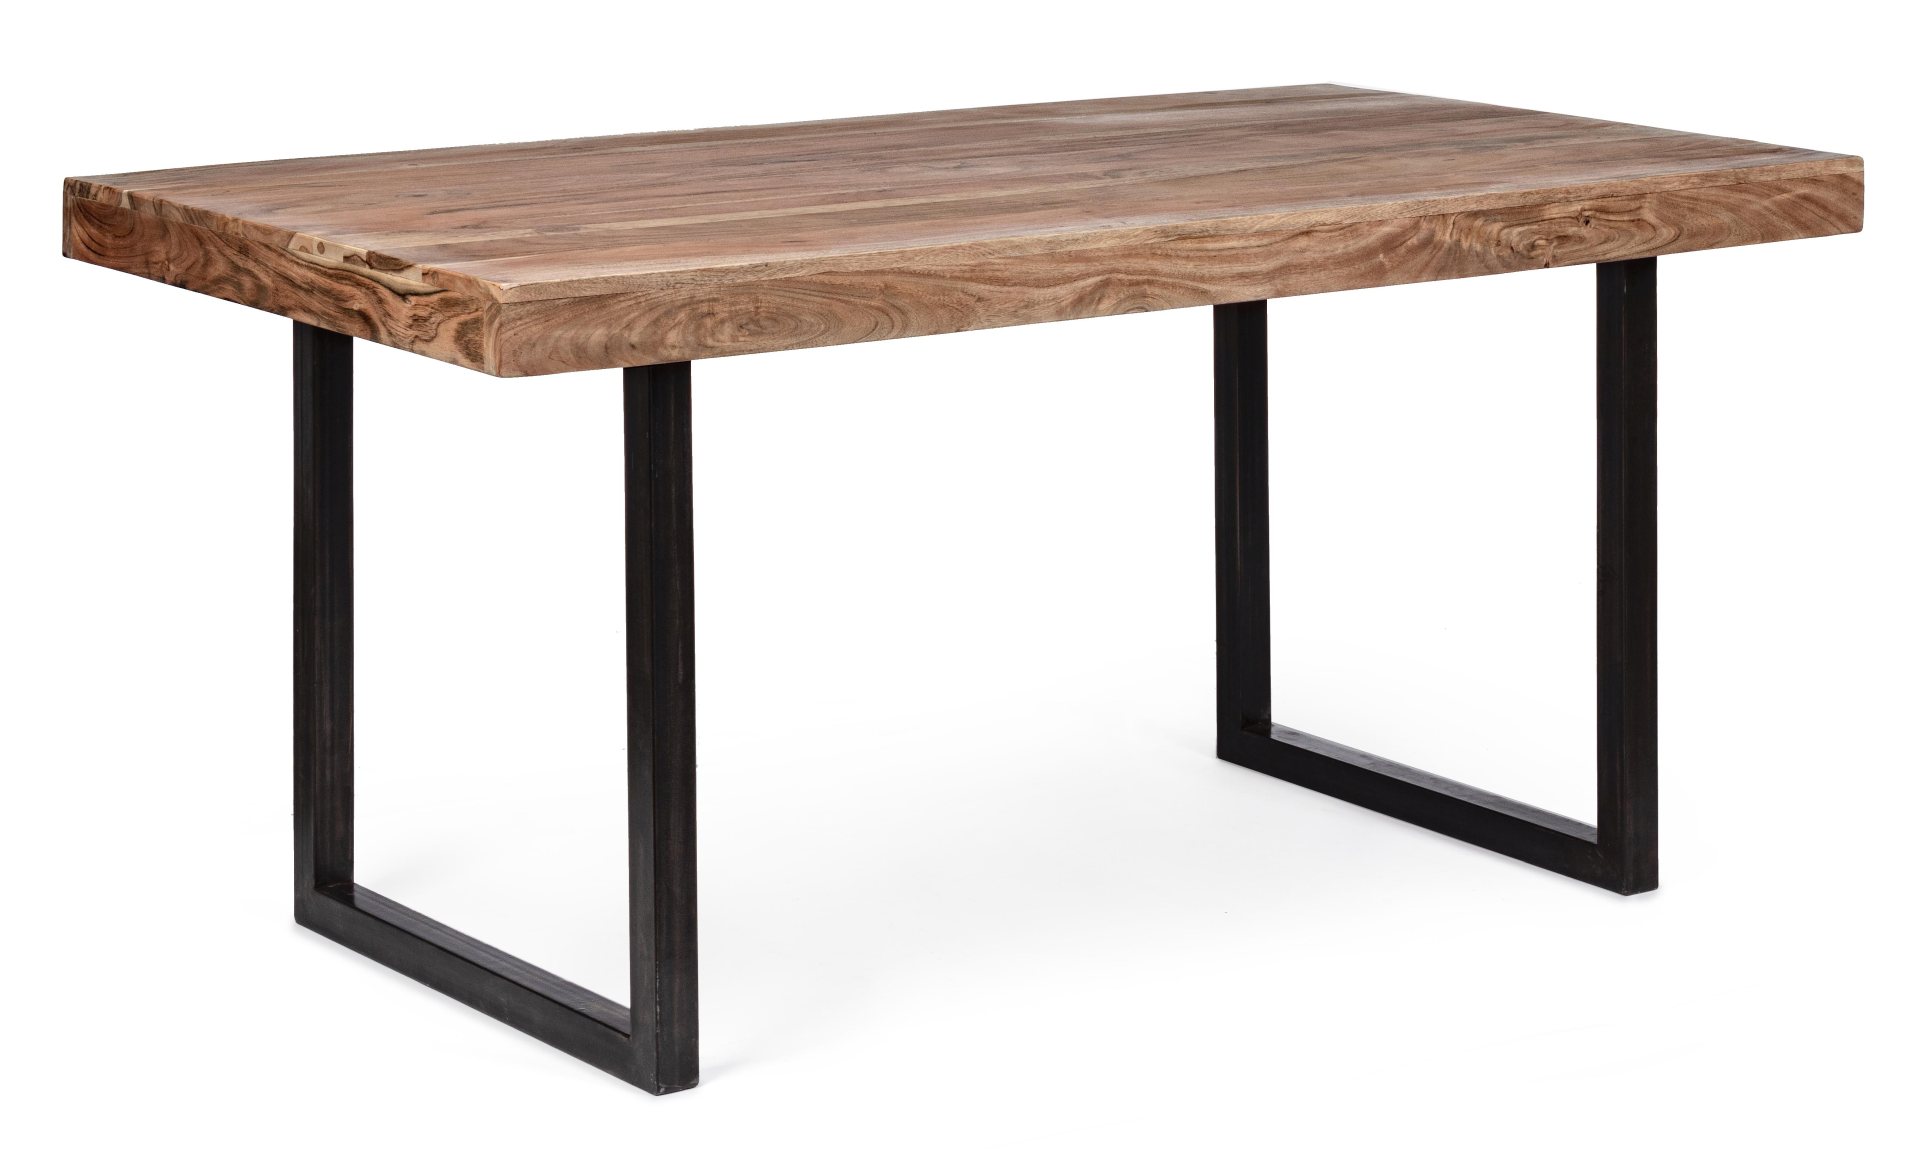 Der Esstisch Egon überzeugt mit seinem moderndem Design. Gefertigt wurde er aus Akazienholz, welches einen natürlichen Farbton besitzt. Das Gestell des Tisches ist aus Metall und ist in eine schwarze Farbe. Der Tisch besitzt eine Breite von 160 cm.